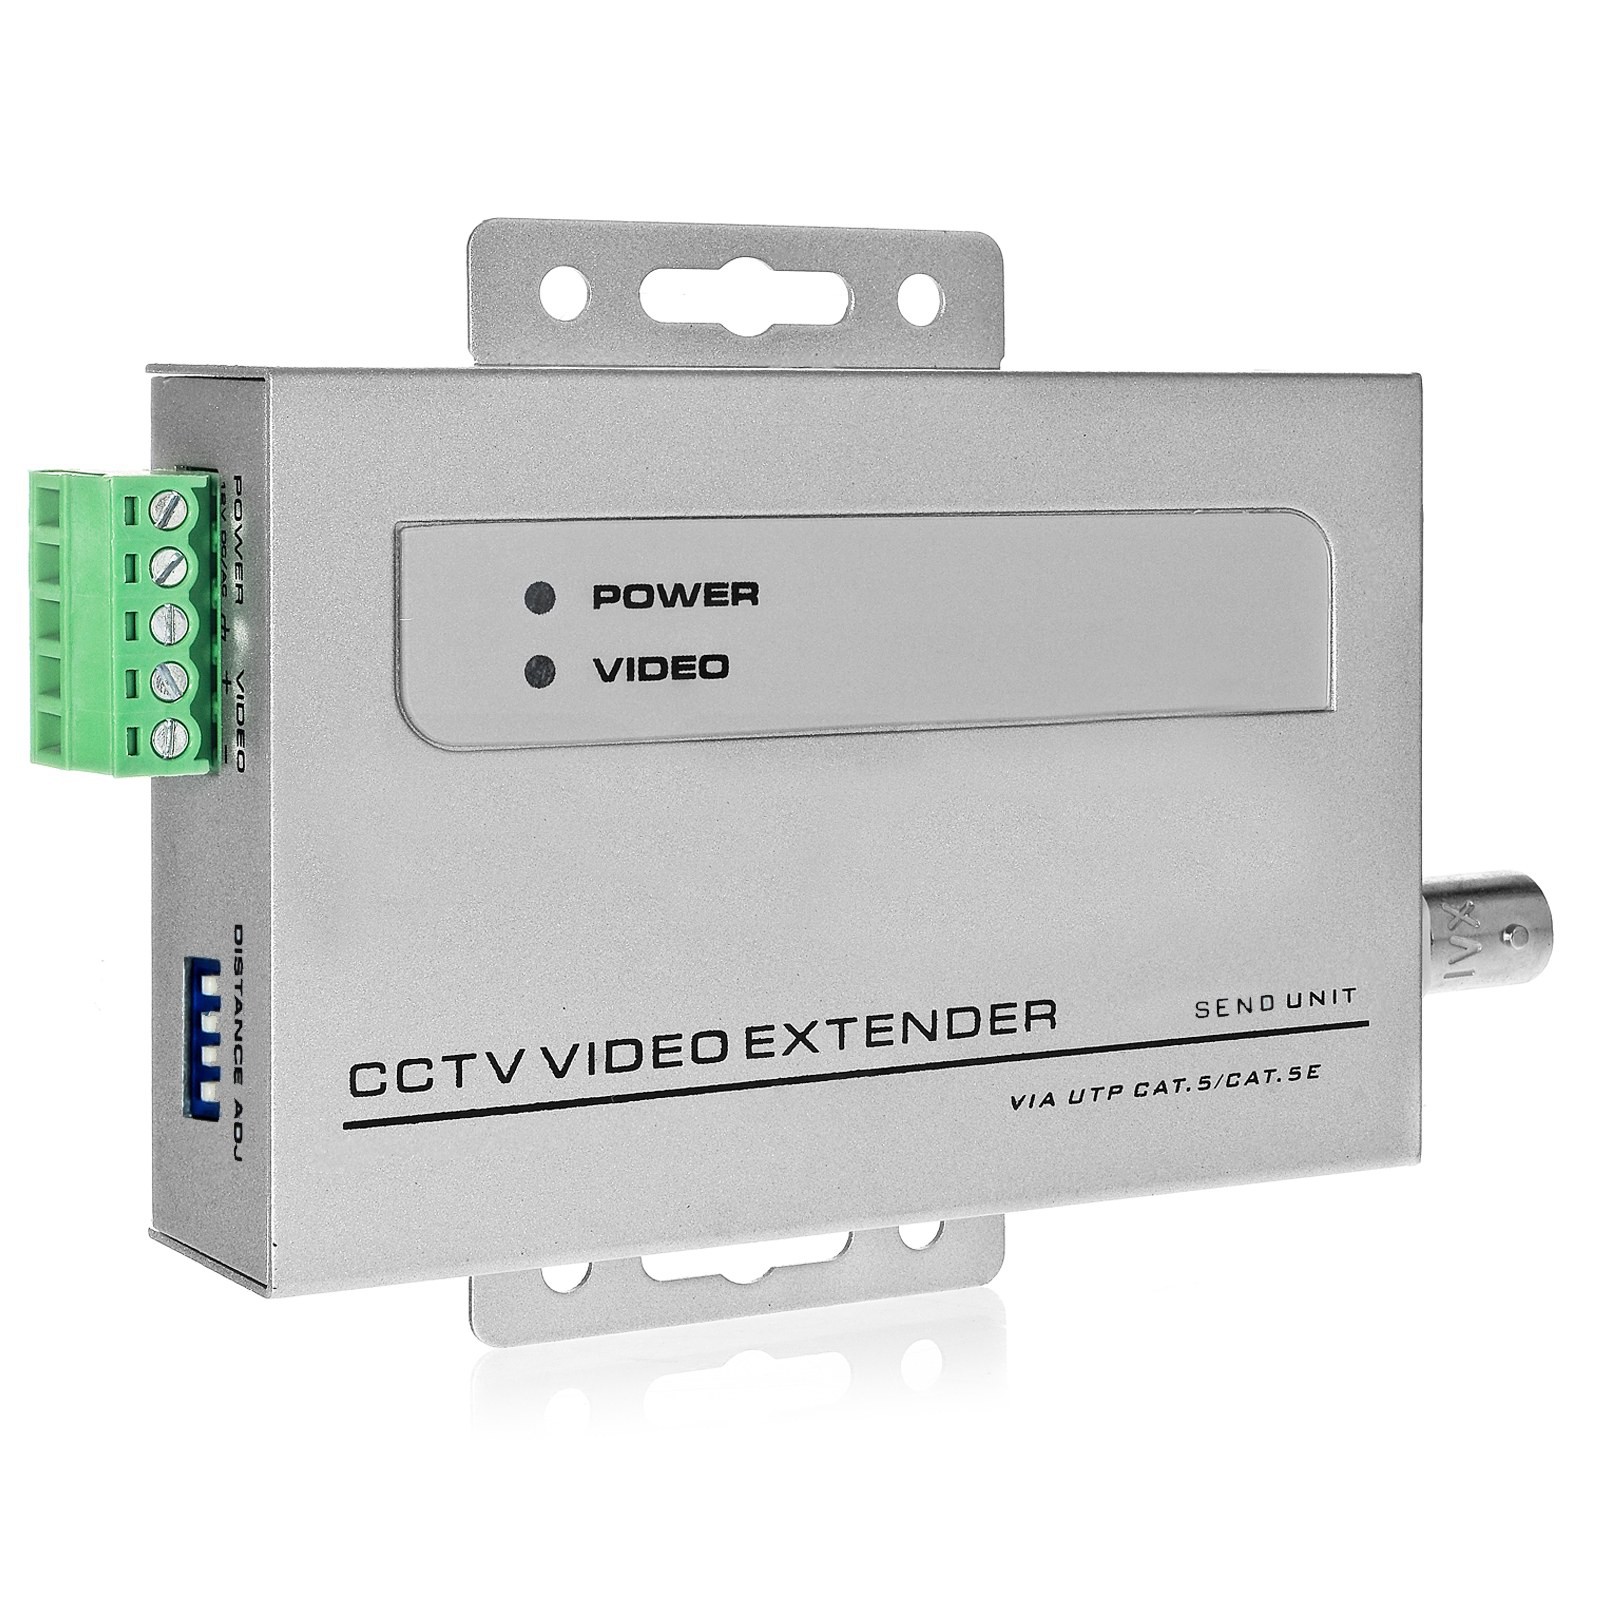 Video Balun Trasmettitore e Ricetrasmettitore,Tangxi Balun Video Passivo HD-CVI/TVI/AHD 3 in 1 2Pcs con Indicatore LED,Connettore di alimentazione&Trasmettitore dati CAT5 RJ45,Utilizzo per Telecamera 